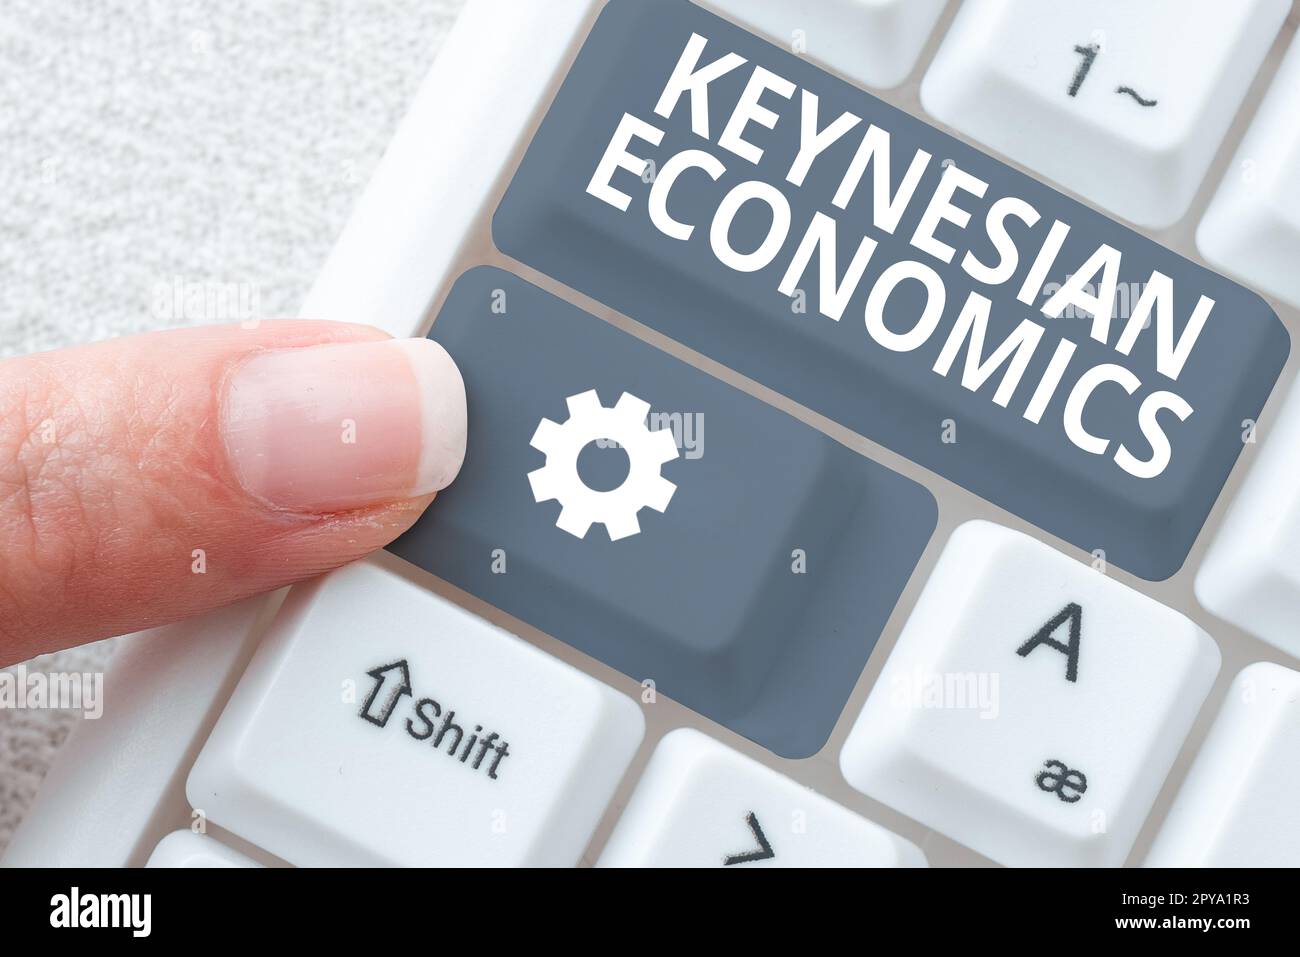 Konzeptionelle Darstellung keynesianischer Ökonomie. Internet-Konzept Geld- und Finanzprogramme der Regierung zur Steigerung der Beschäftigung Stockfoto